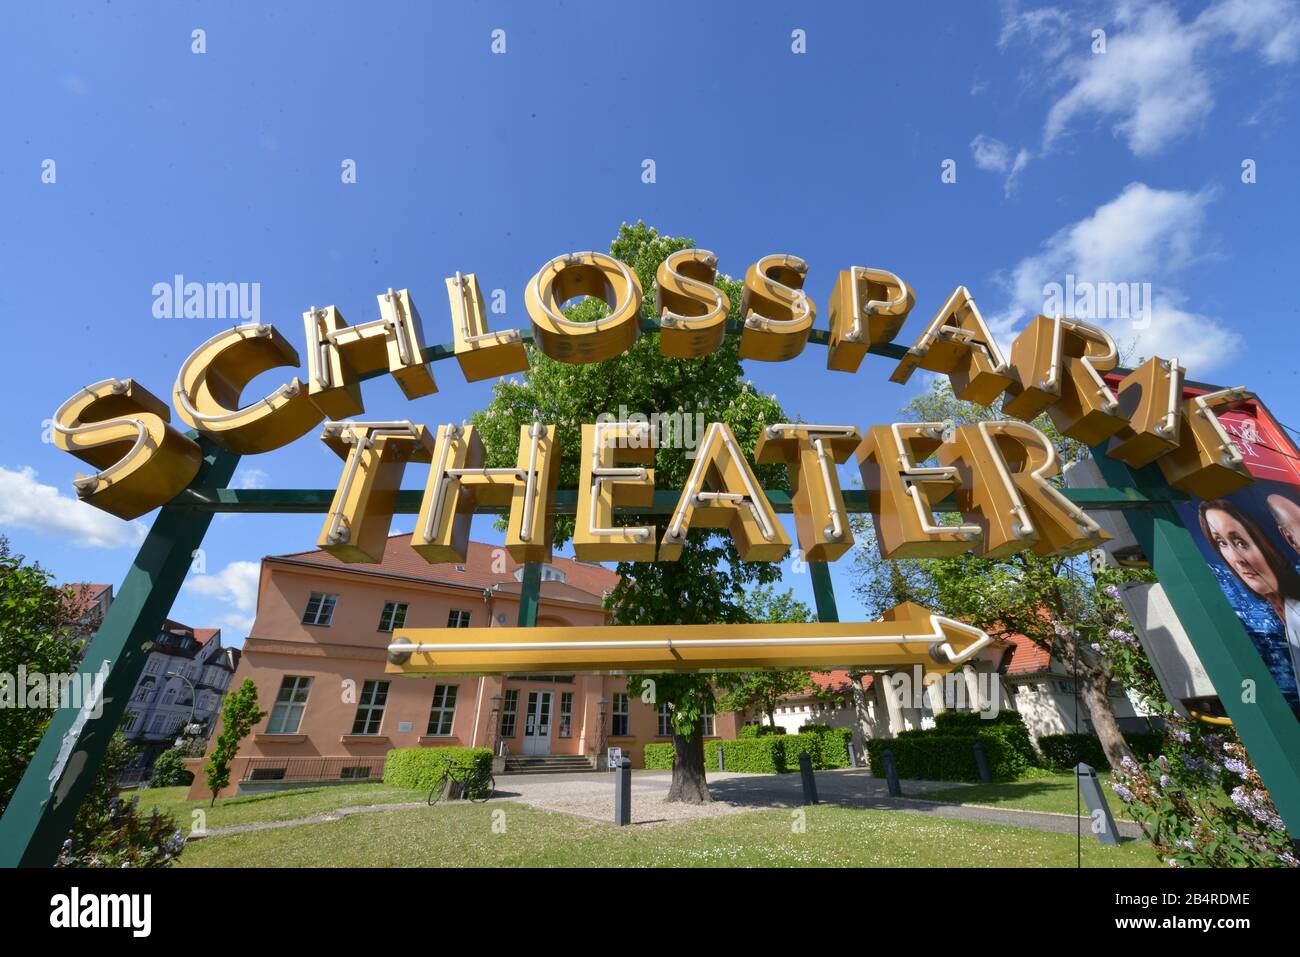 Schlossparktheater, Schlossstrasse, Steglitz, Berlin, Deutschland Banque D'Images